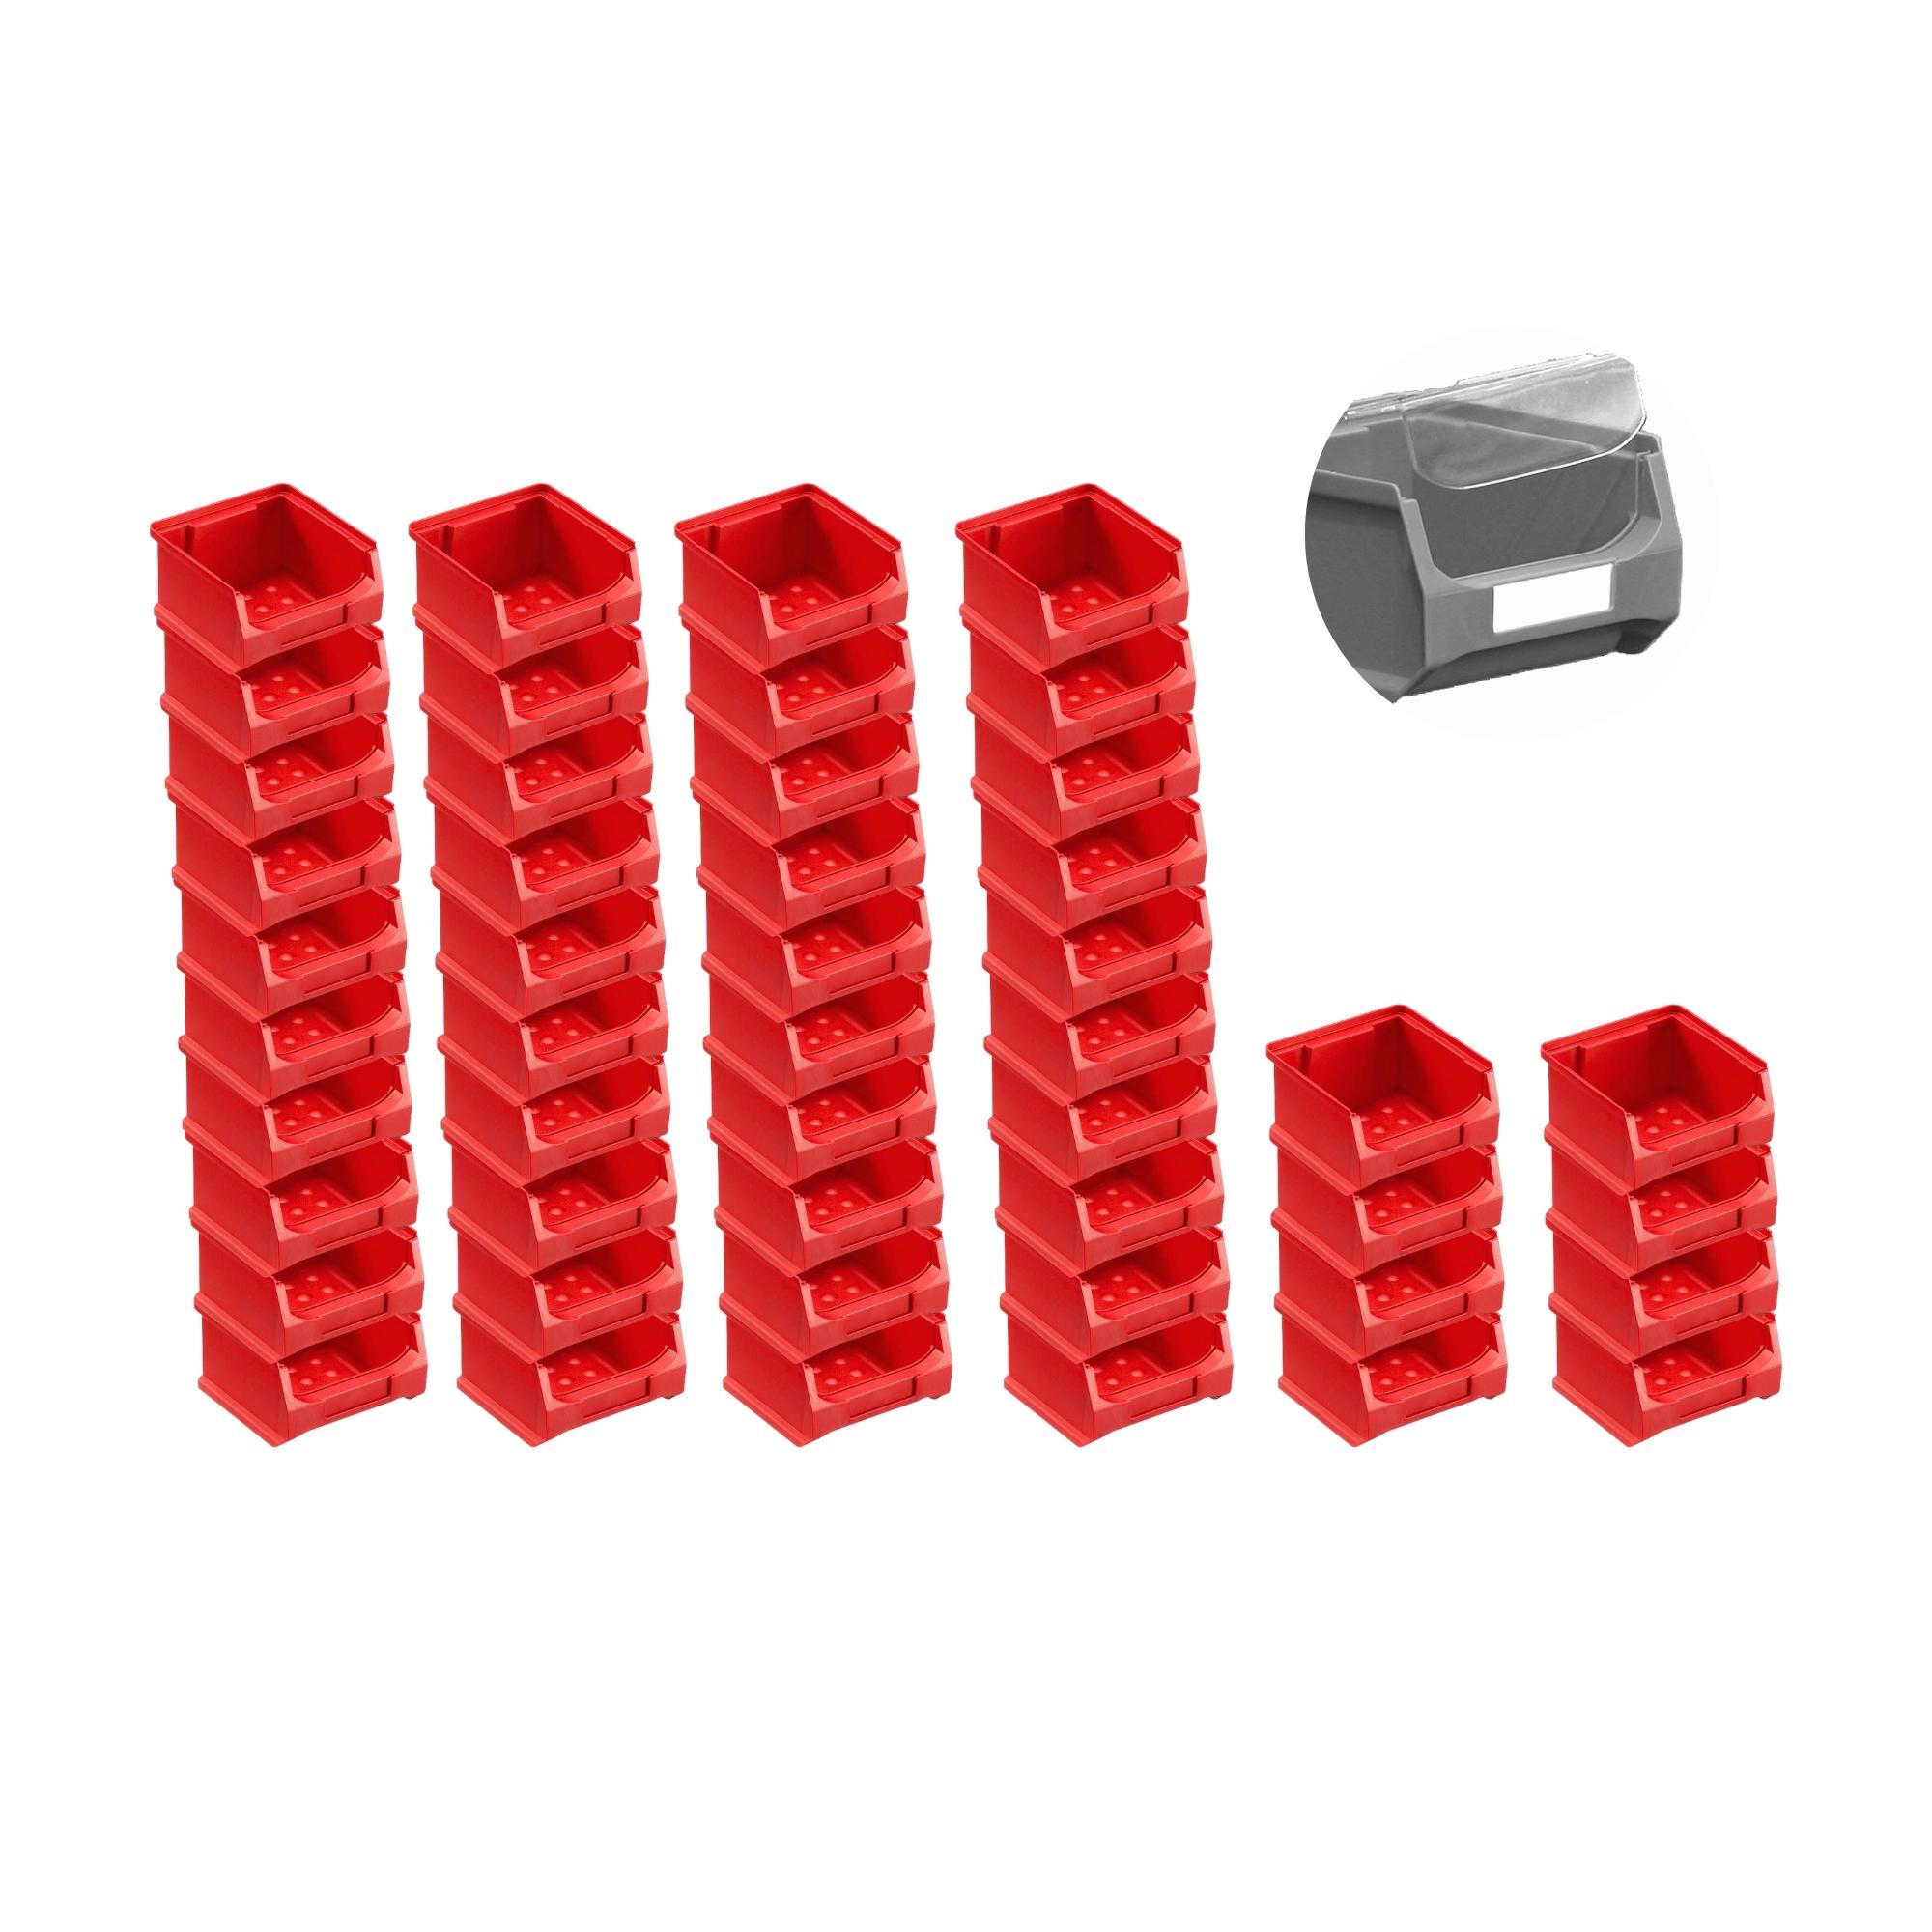 SuperSparSet 48x Rote Sichtlagerbox 1.0 mit Abdeckung | HxBxT 6x10x10cm | 0,4 Liter | Sichtlagerbehälter, Sichtlagerkasten, Sichtlagerkastensortiment, Sortierbehälter